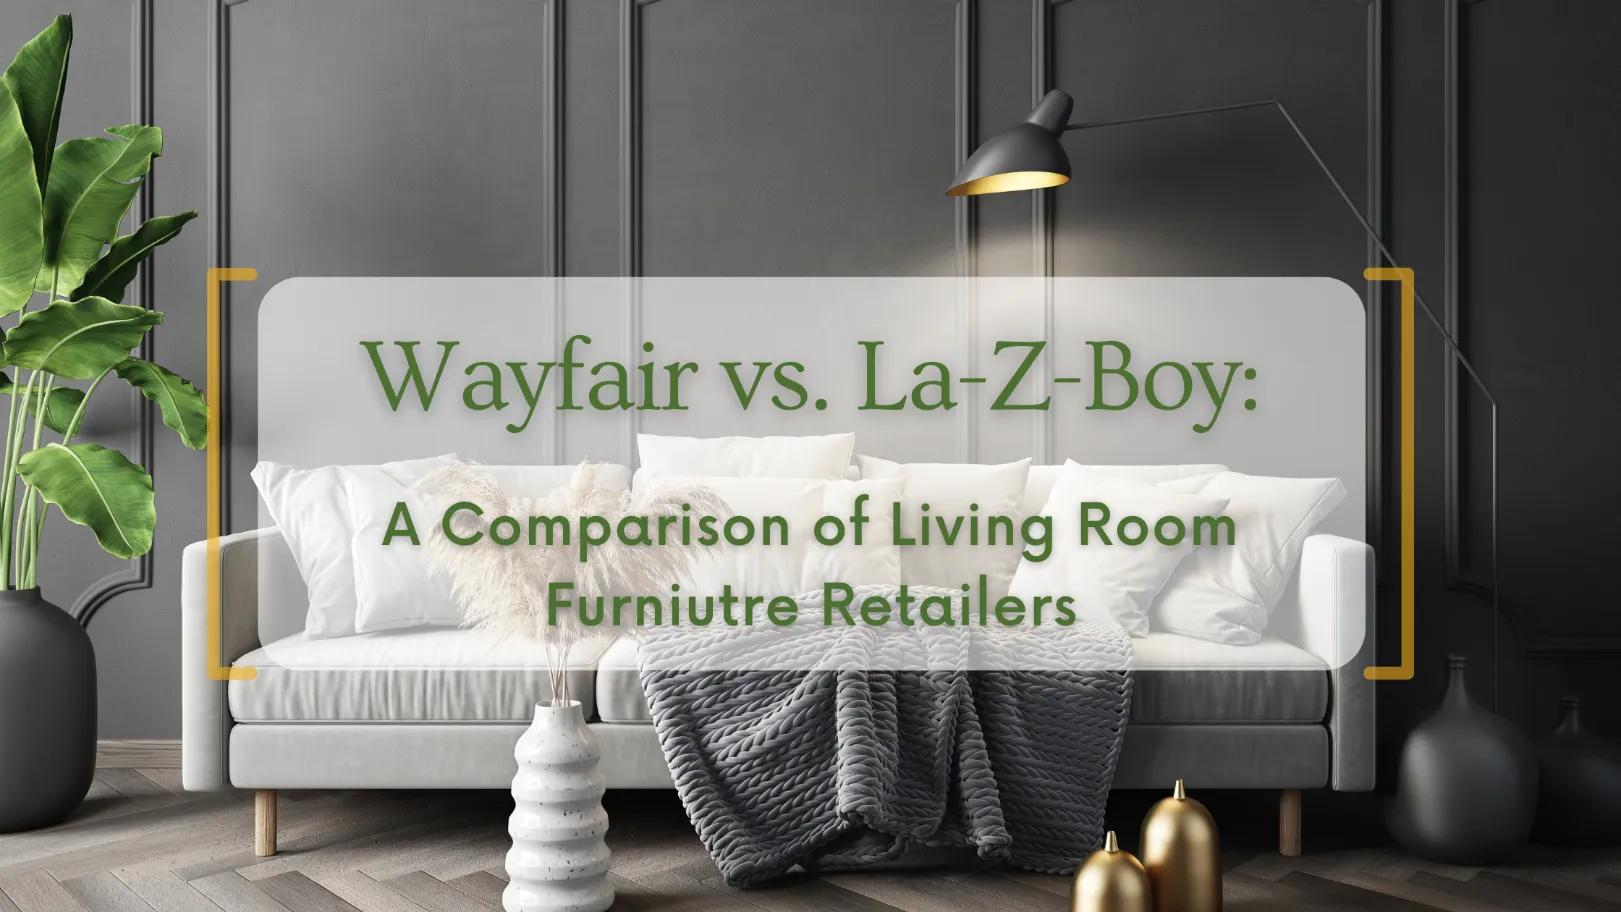 Wayfair vs. La-Z-Boy: A Comparison of Living Room Furniture Retailers